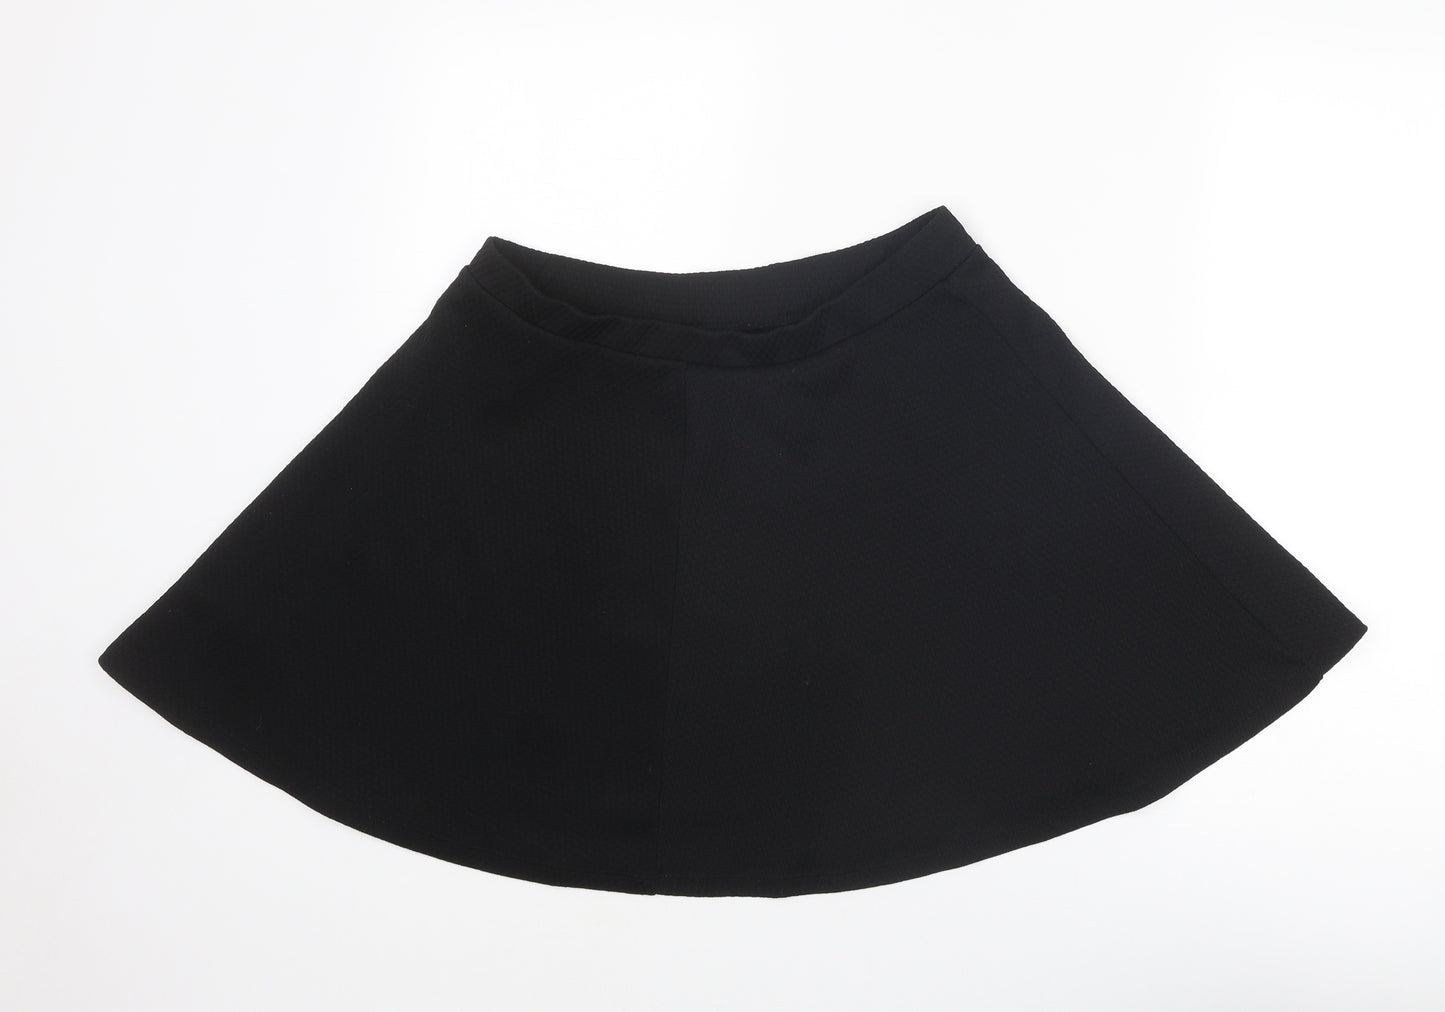 Dorothy Perkins Womens Black Polyester Swing Skirt Size 16